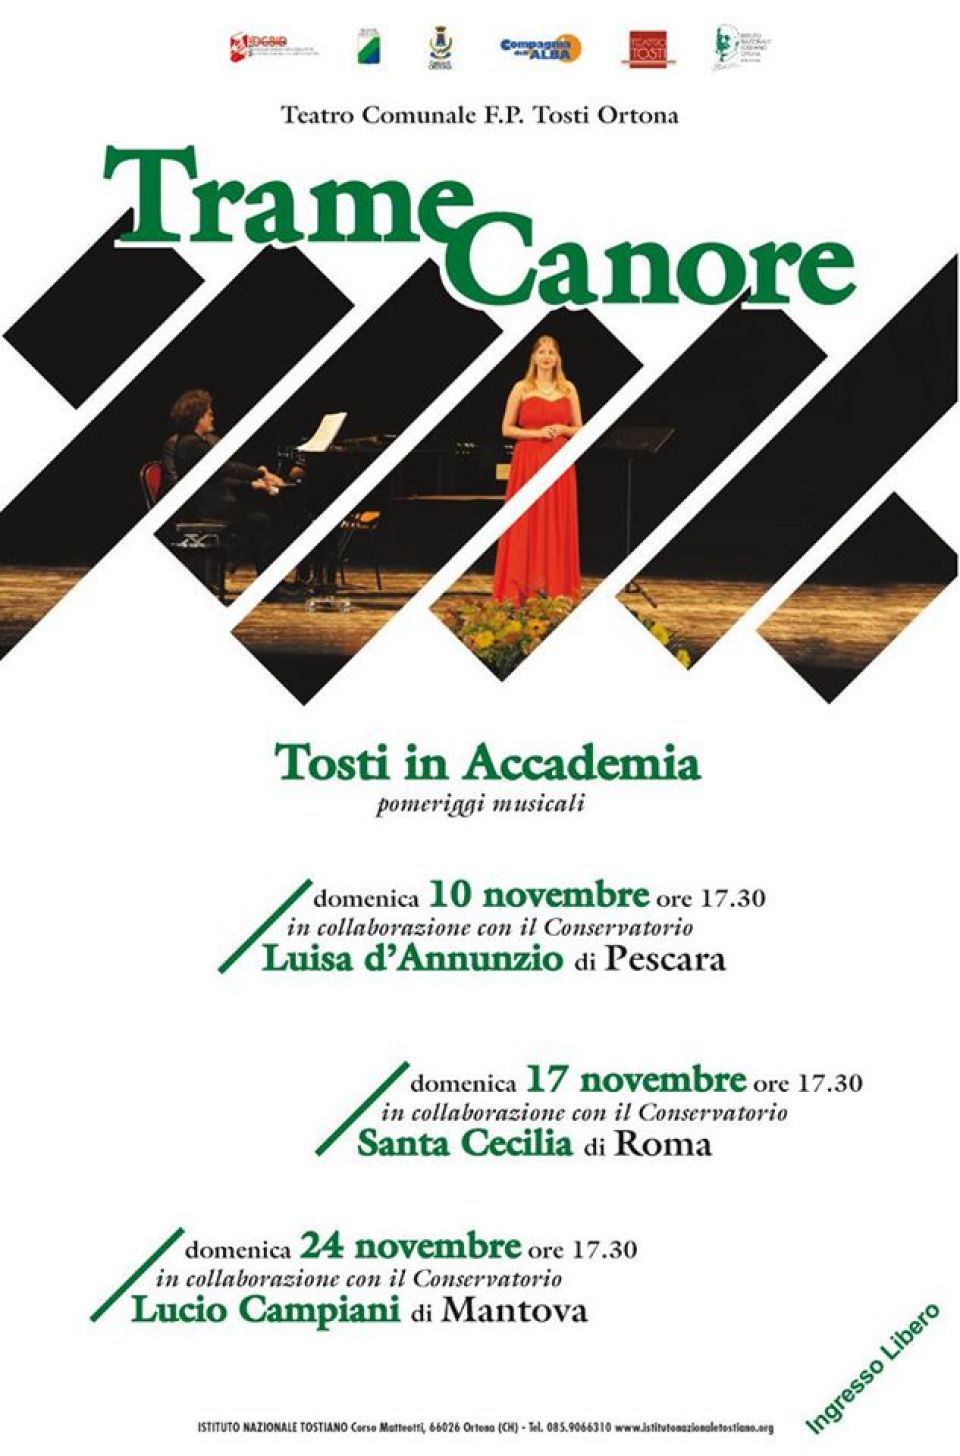 “Tosti in Accademia”, tre concerti al TEATRO TOSTI di Ortona a cura dell’Istituto nazionale tostiano